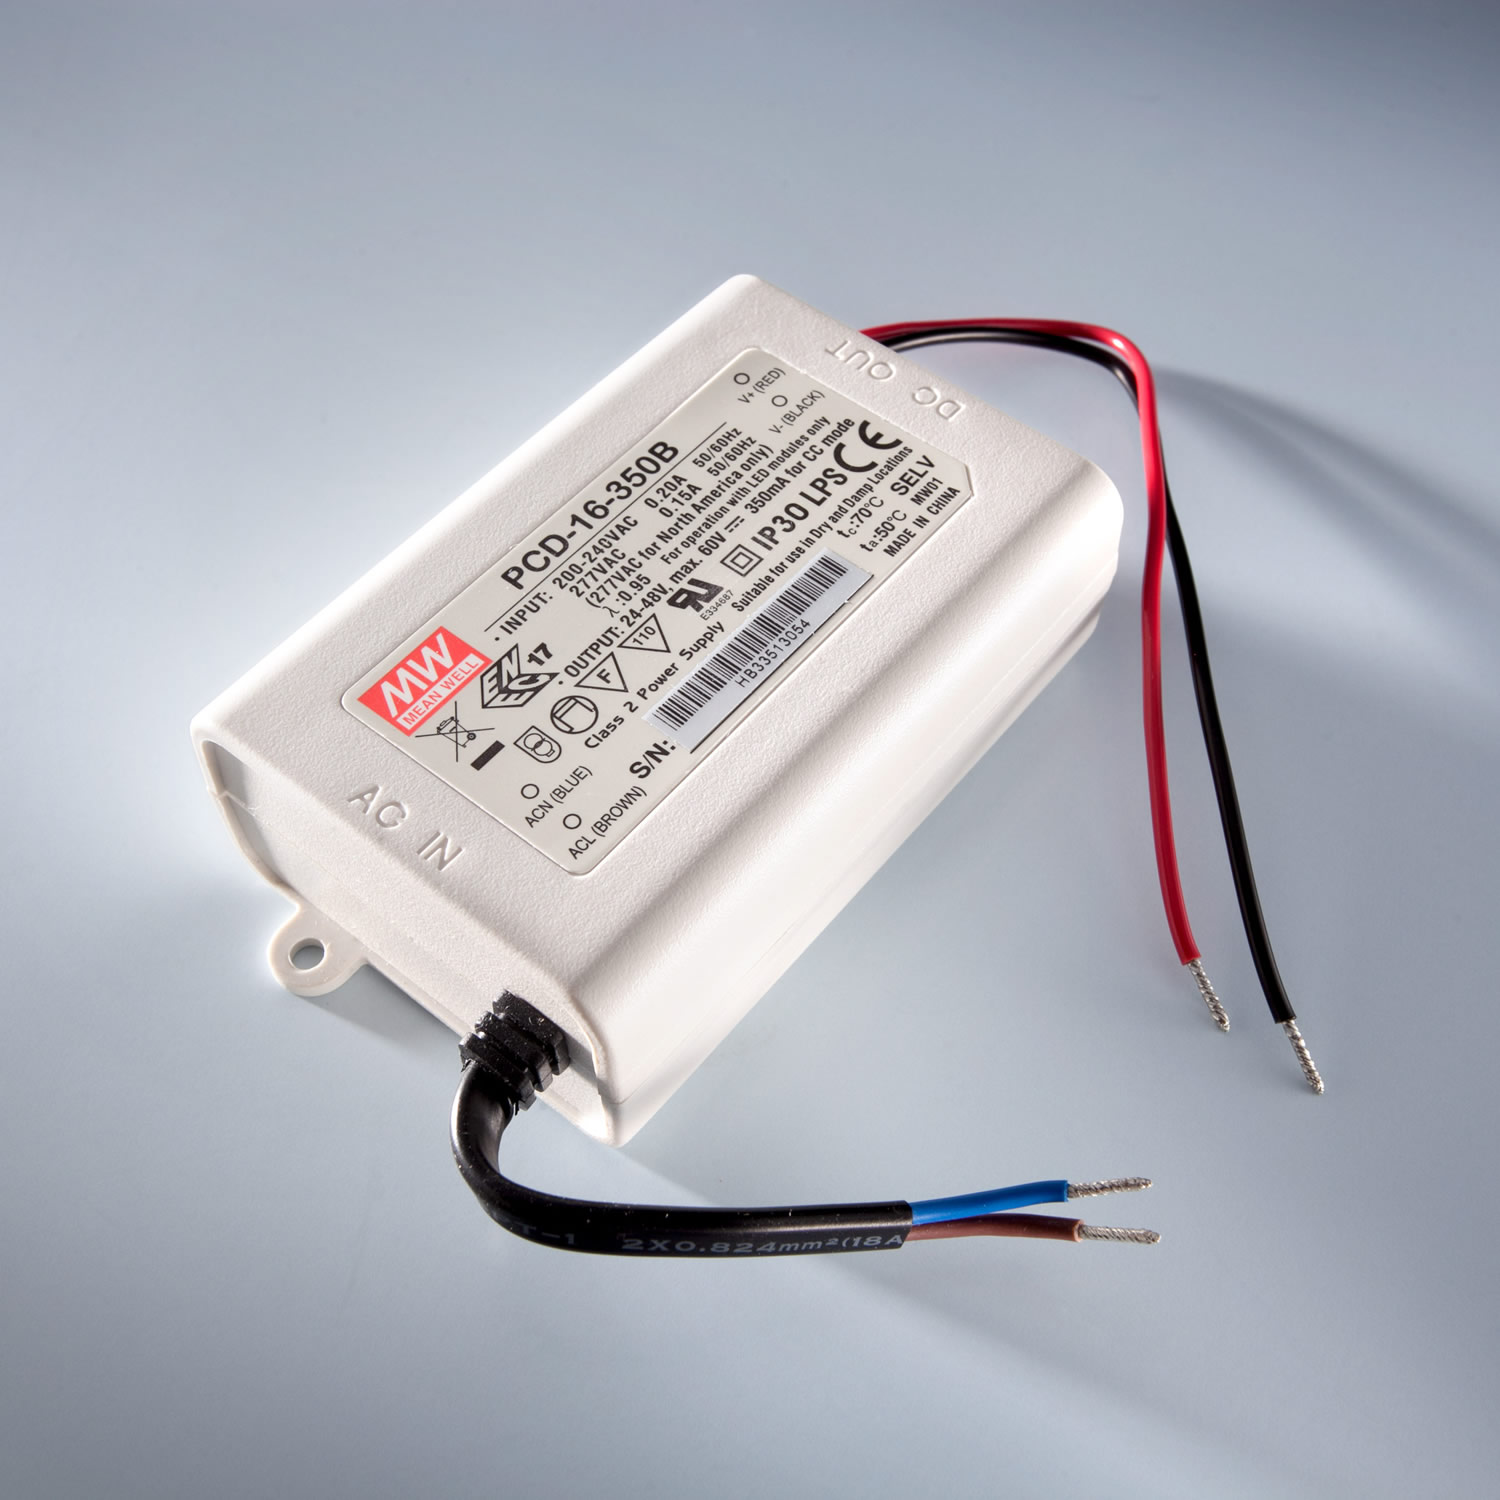 MEAN WELL LED Driver transformador de corrente constante PCD-40-1050B IP30 700mA 230V a 34 > 57VDC DIM